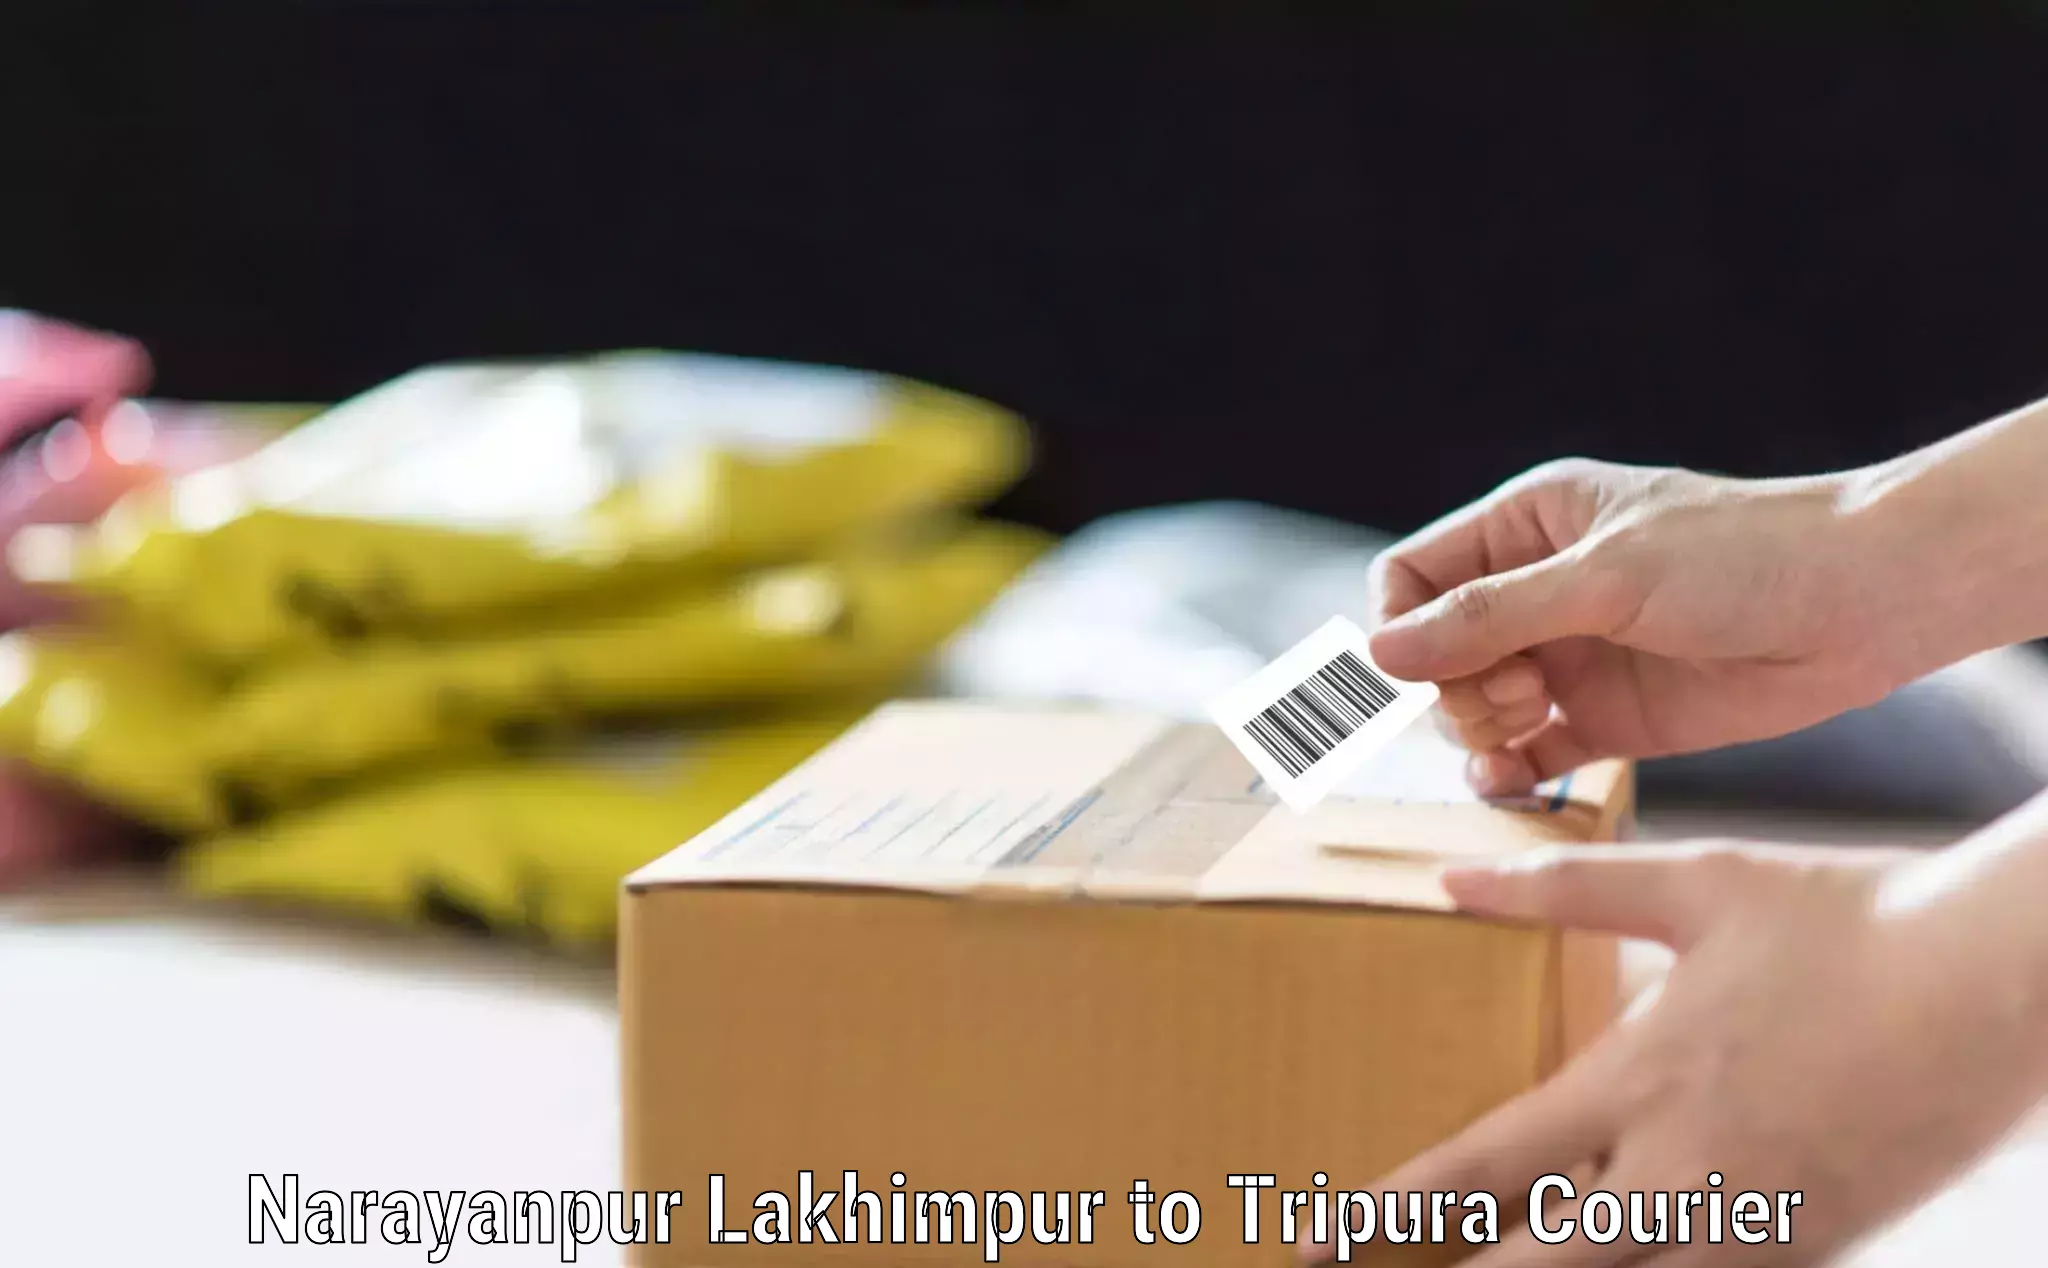 Professional baggage transport Narayanpur Lakhimpur to Dhalai